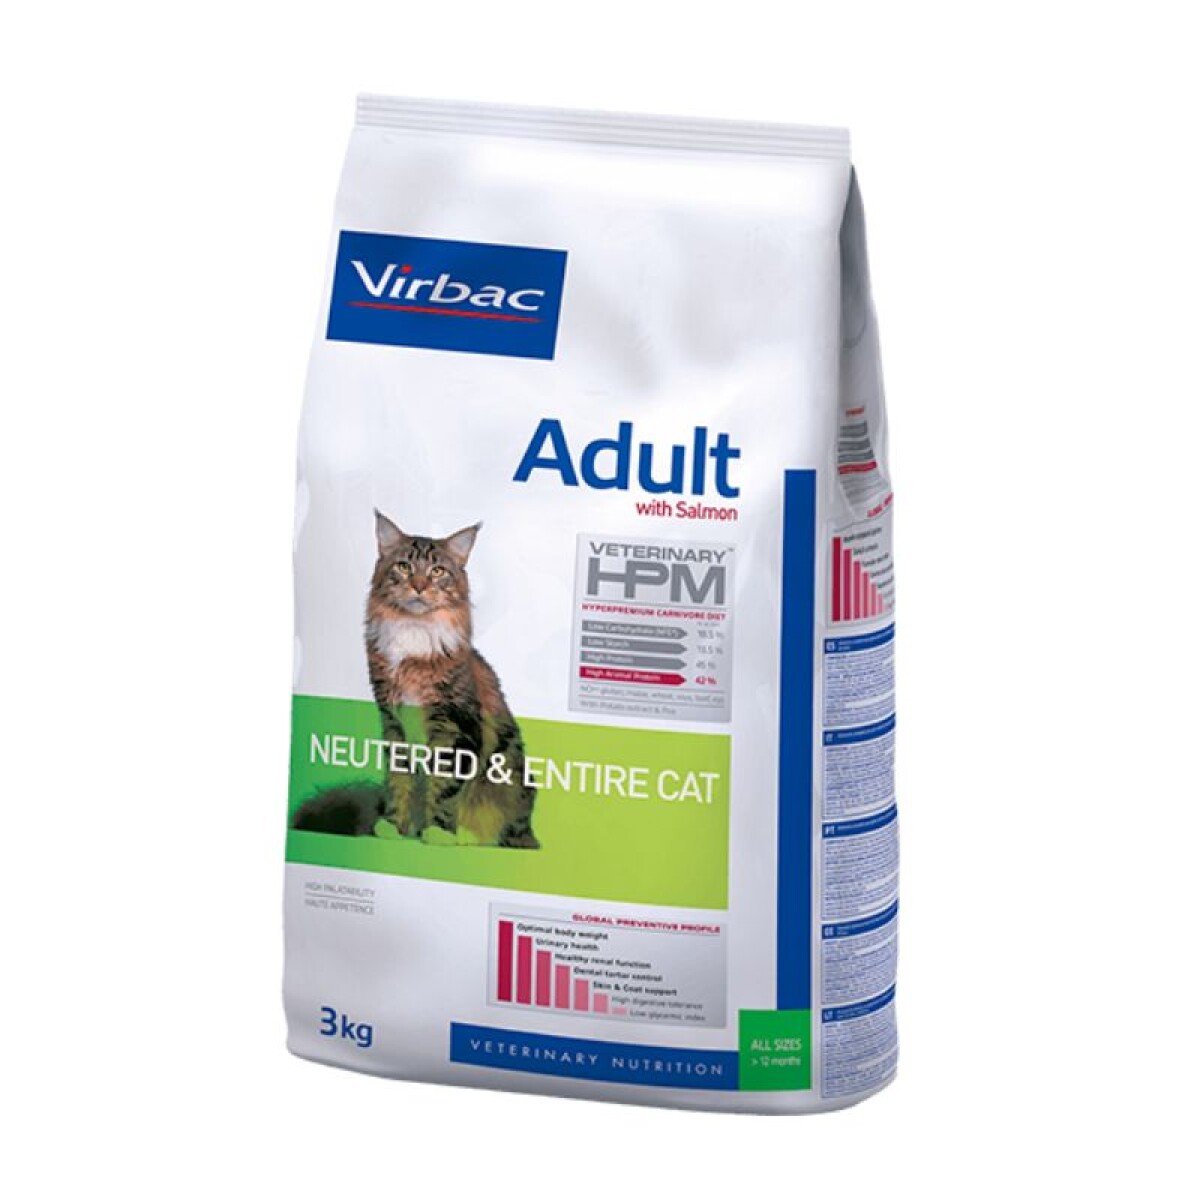 HPM CAT ADULTO 3KG - Hpm Cat Adulto 3kg 